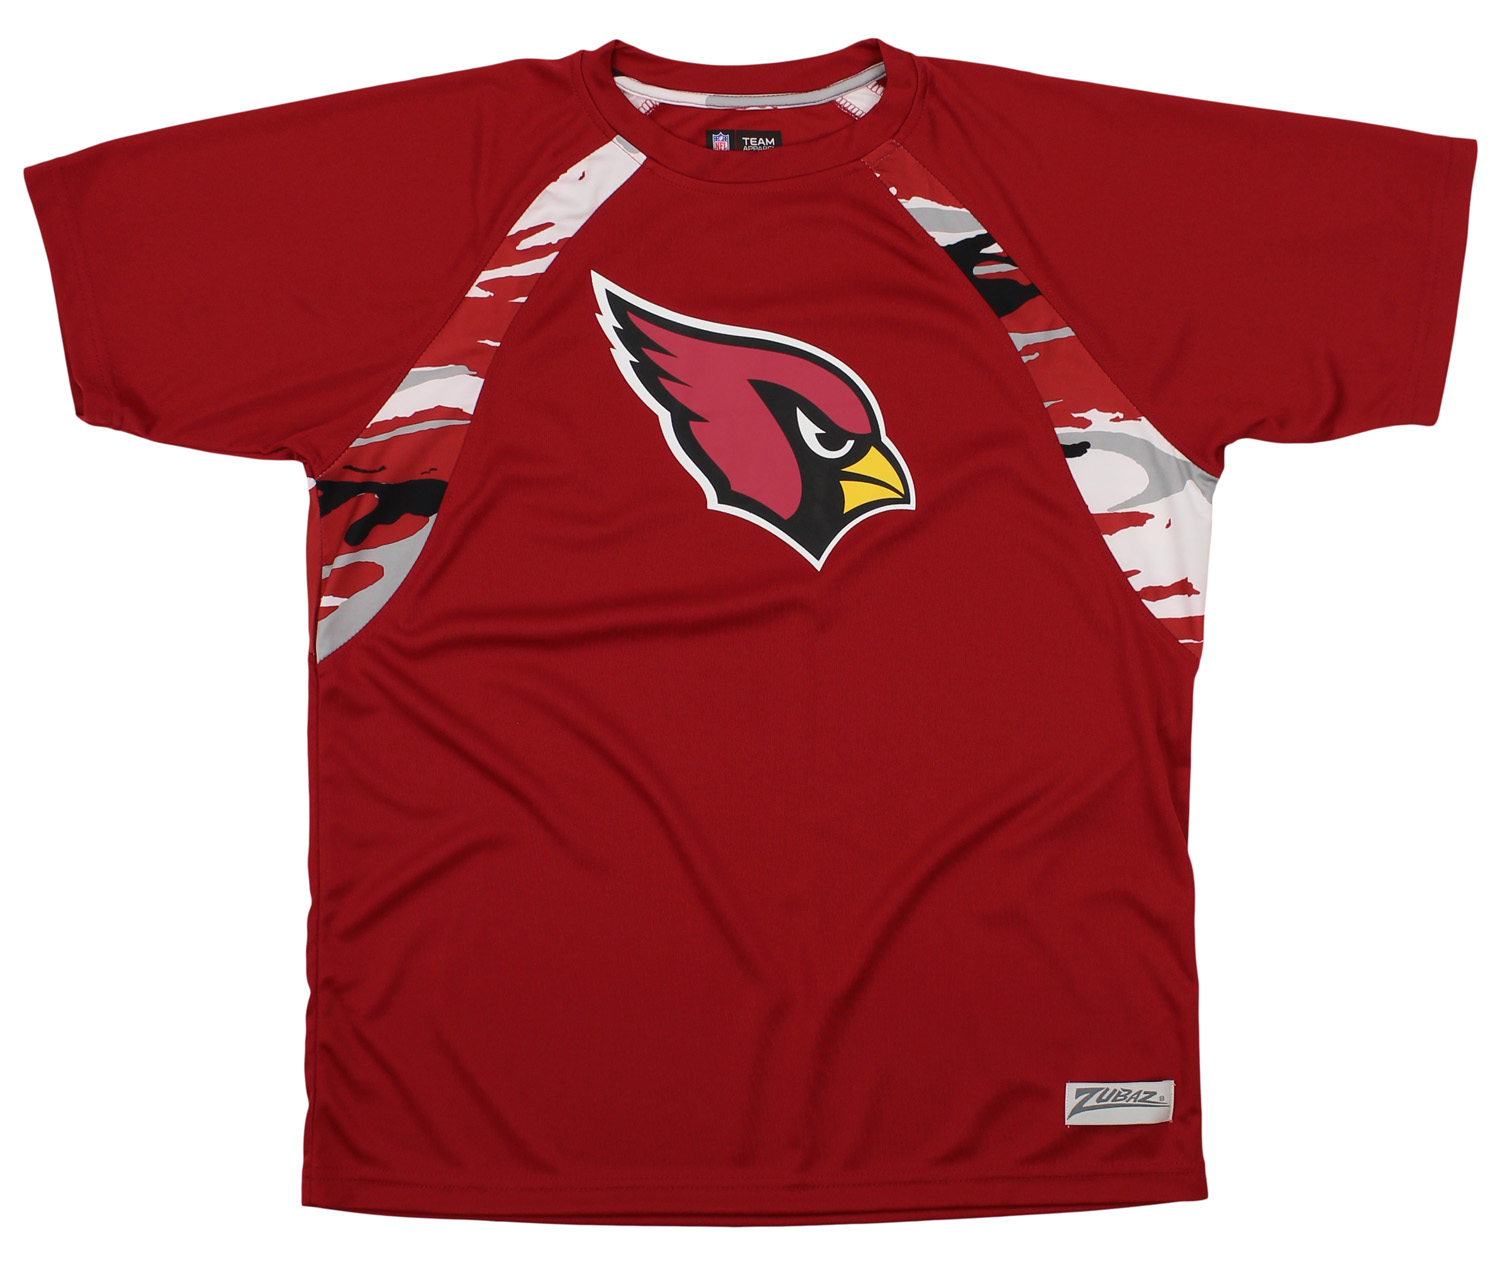 cardinals camo jersey